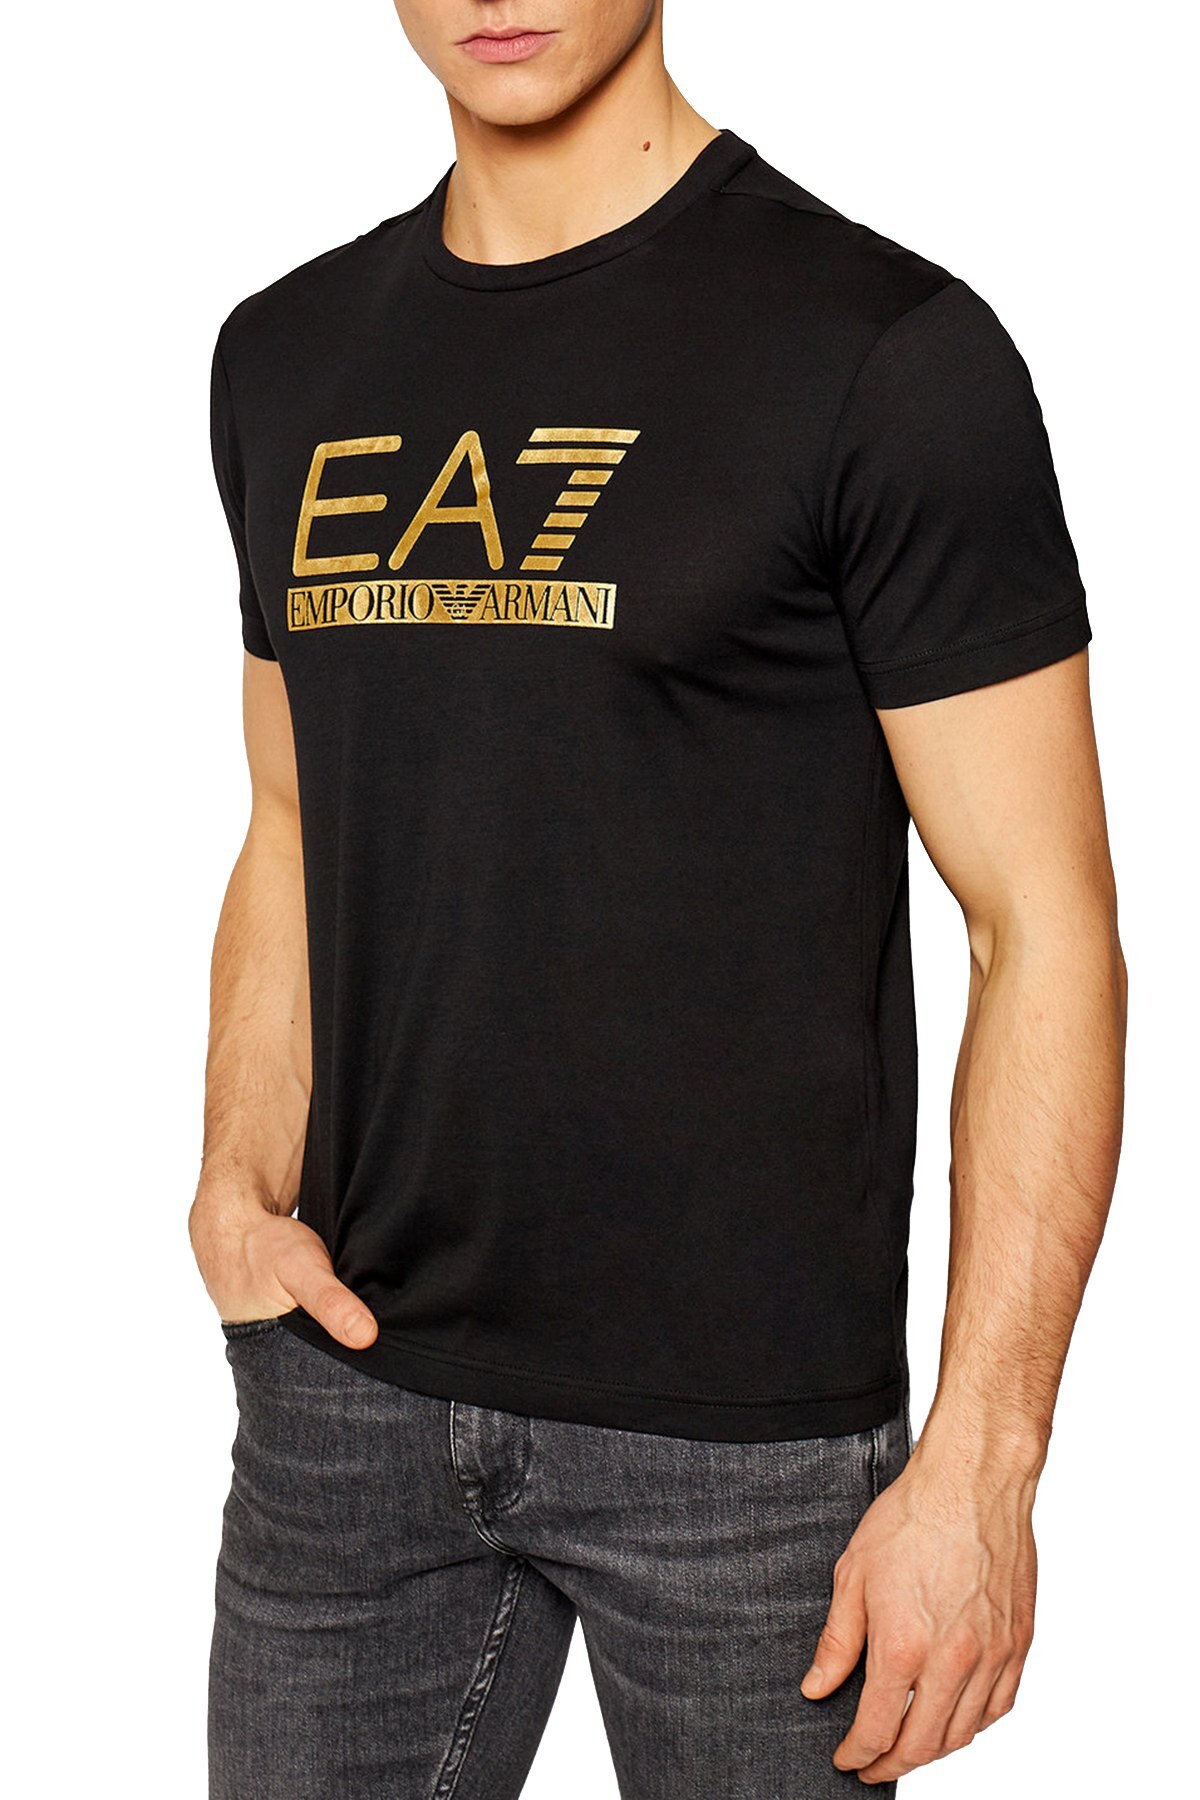 EA7 Logo Baskılı Bisiklet Yaka % 100 Pamuk Erkek T Shirt 3KPT87 PJM9Z 1200 SİYAH